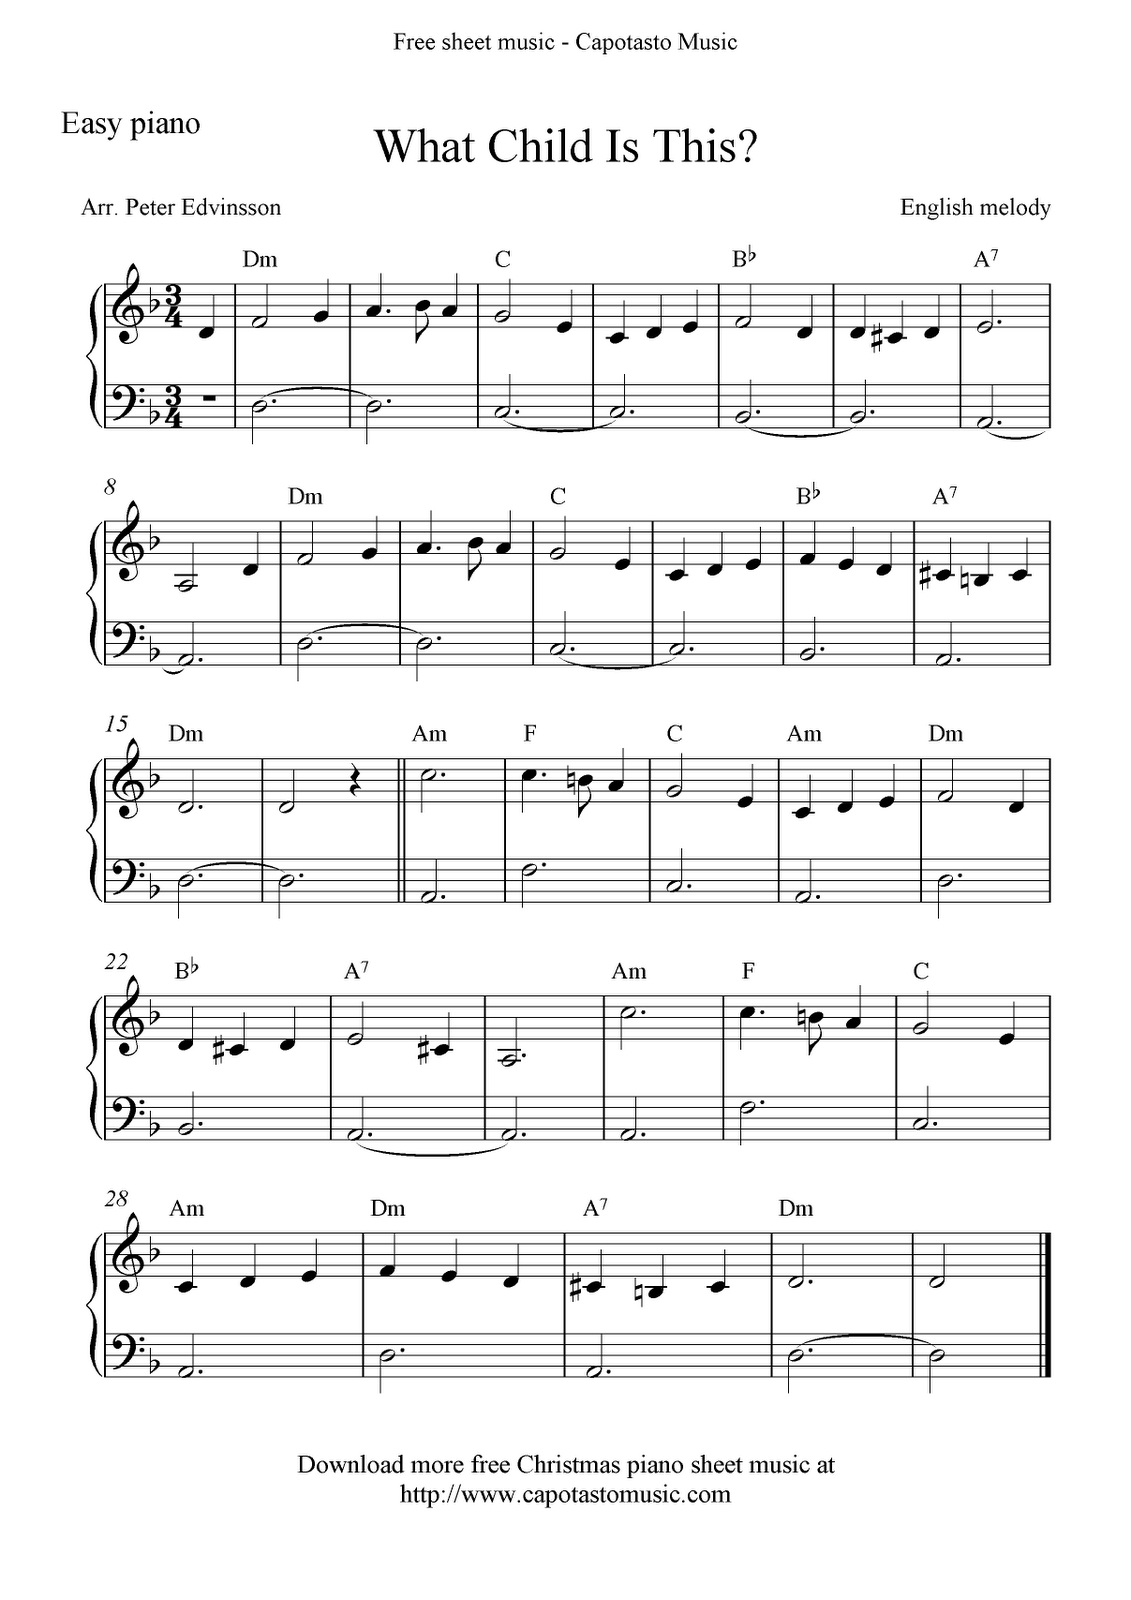 Free Printable Christmas Sheet Music | Free Sheet Music Scores: Free - Christmas Music For Piano Free Printable